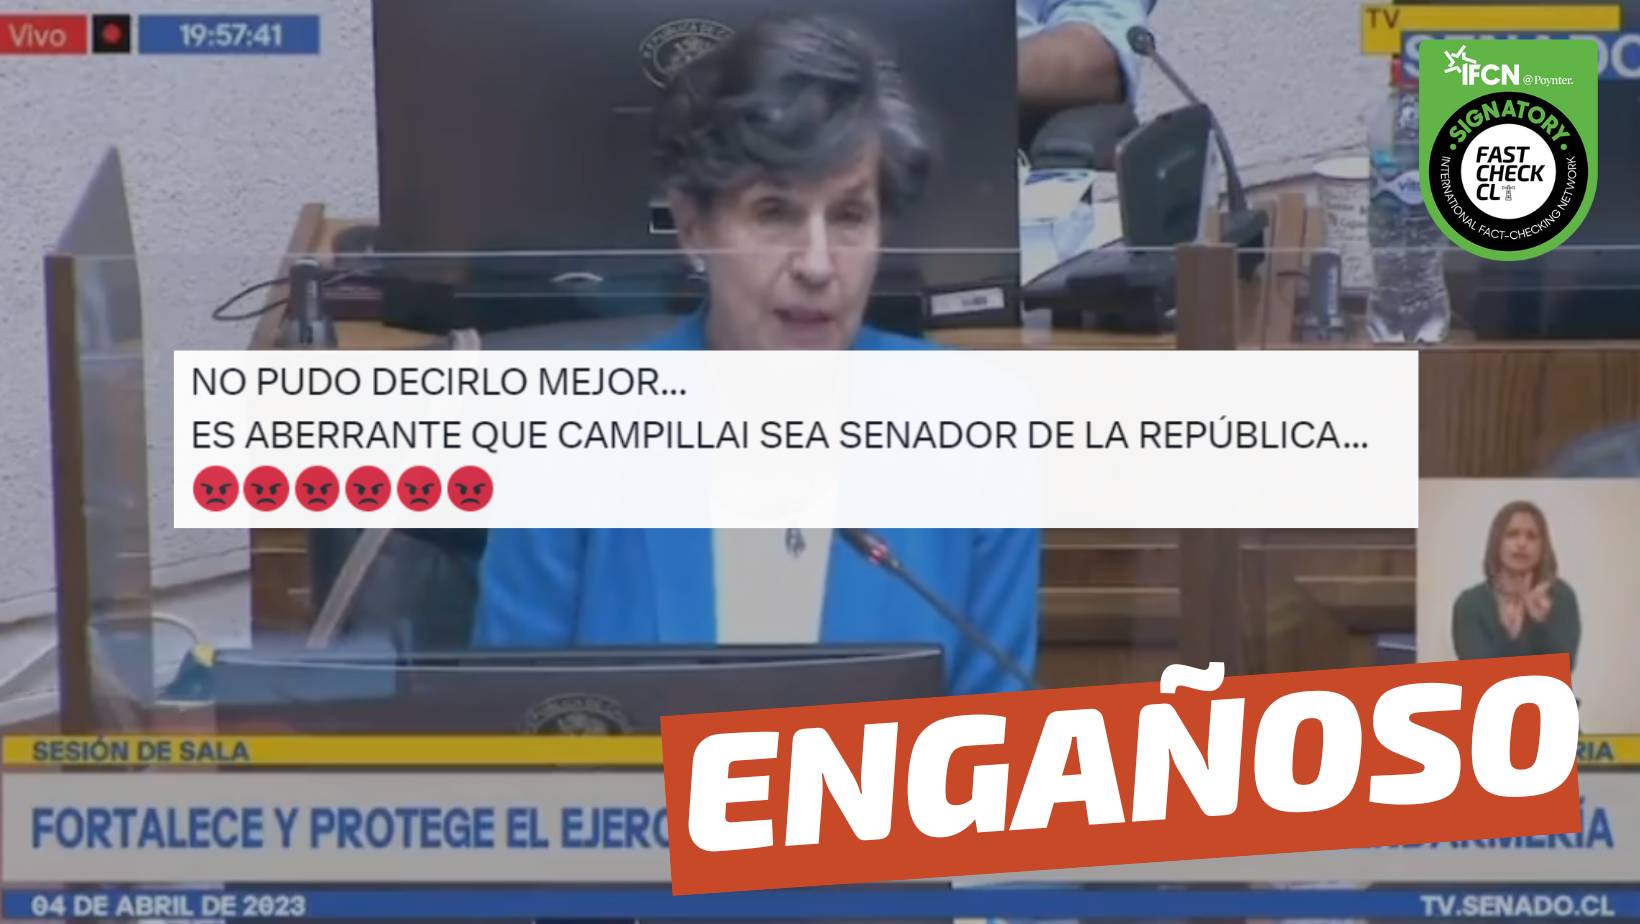 You are currently viewing (Video) Isabel Allende: “Es aberrante que exista una senadora Campillai”: #Engañoso